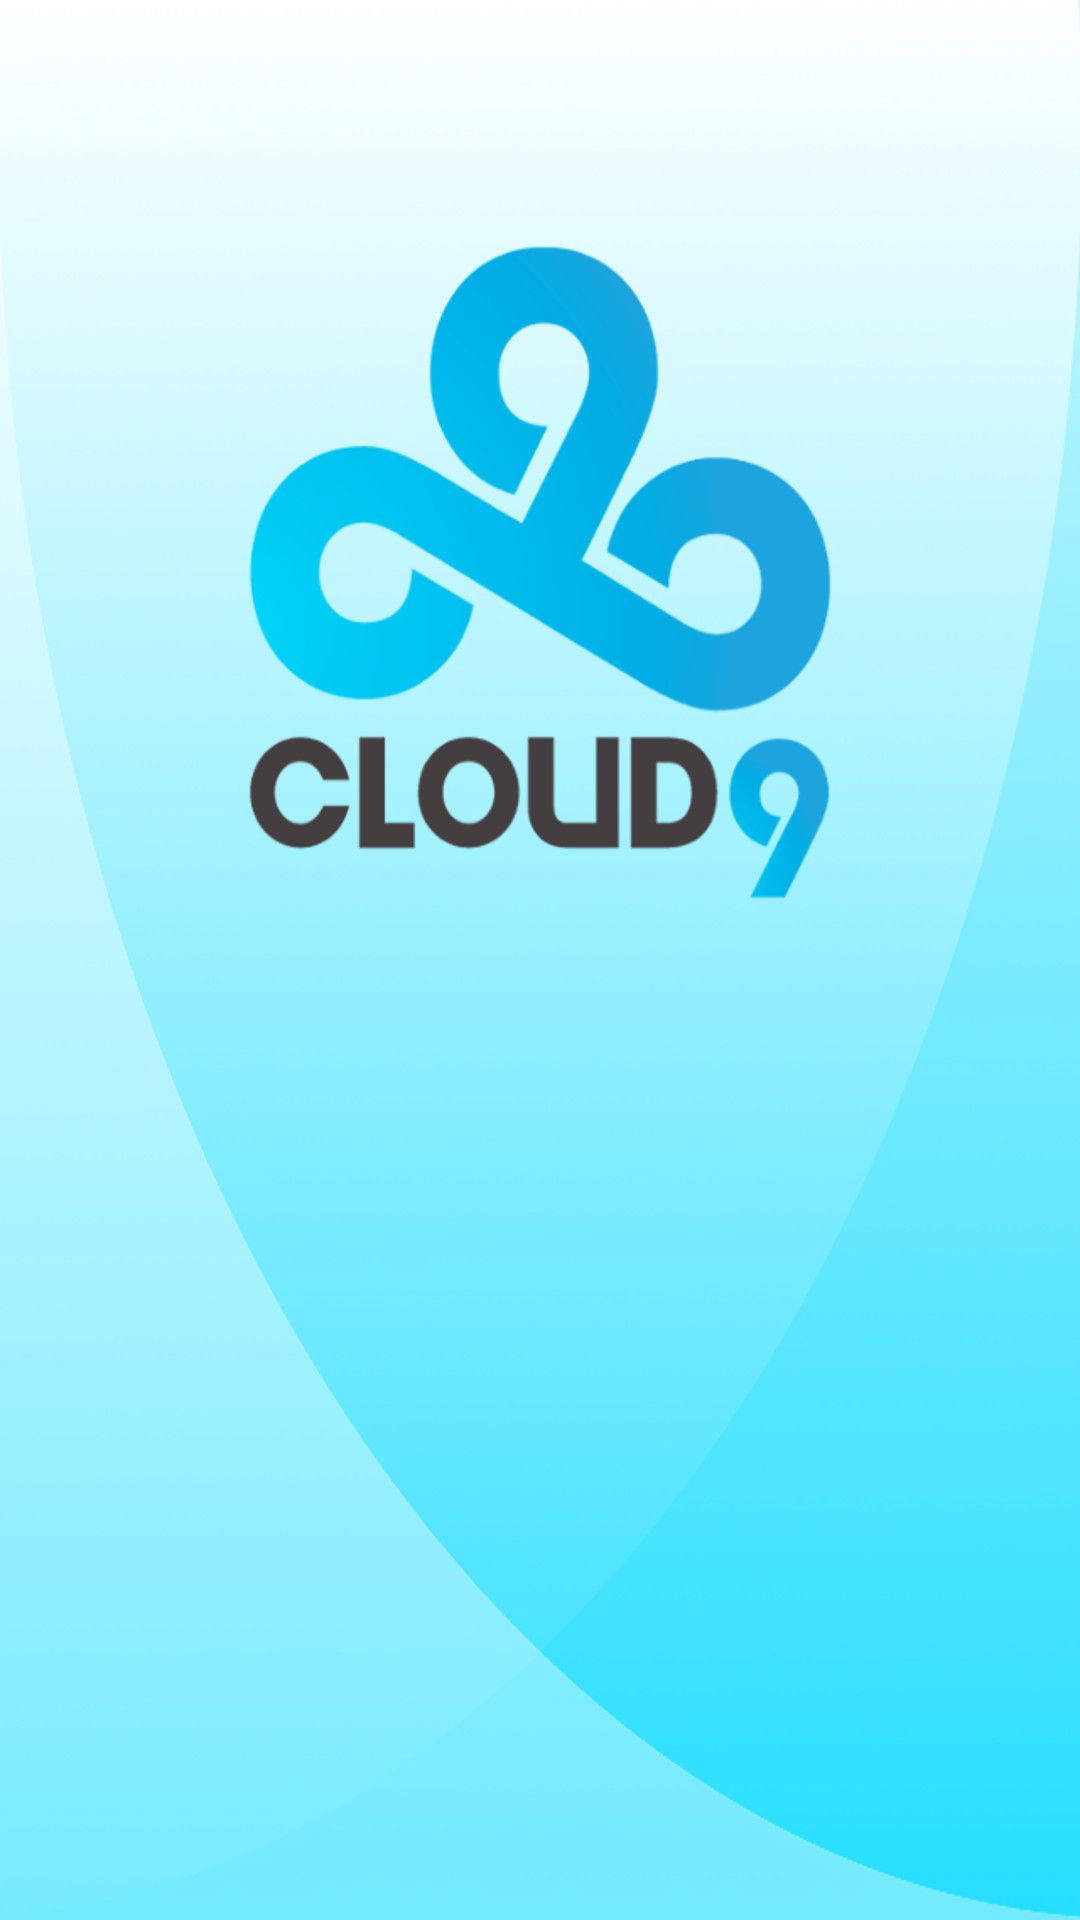 Cloud9 Logo Light Blue Texture